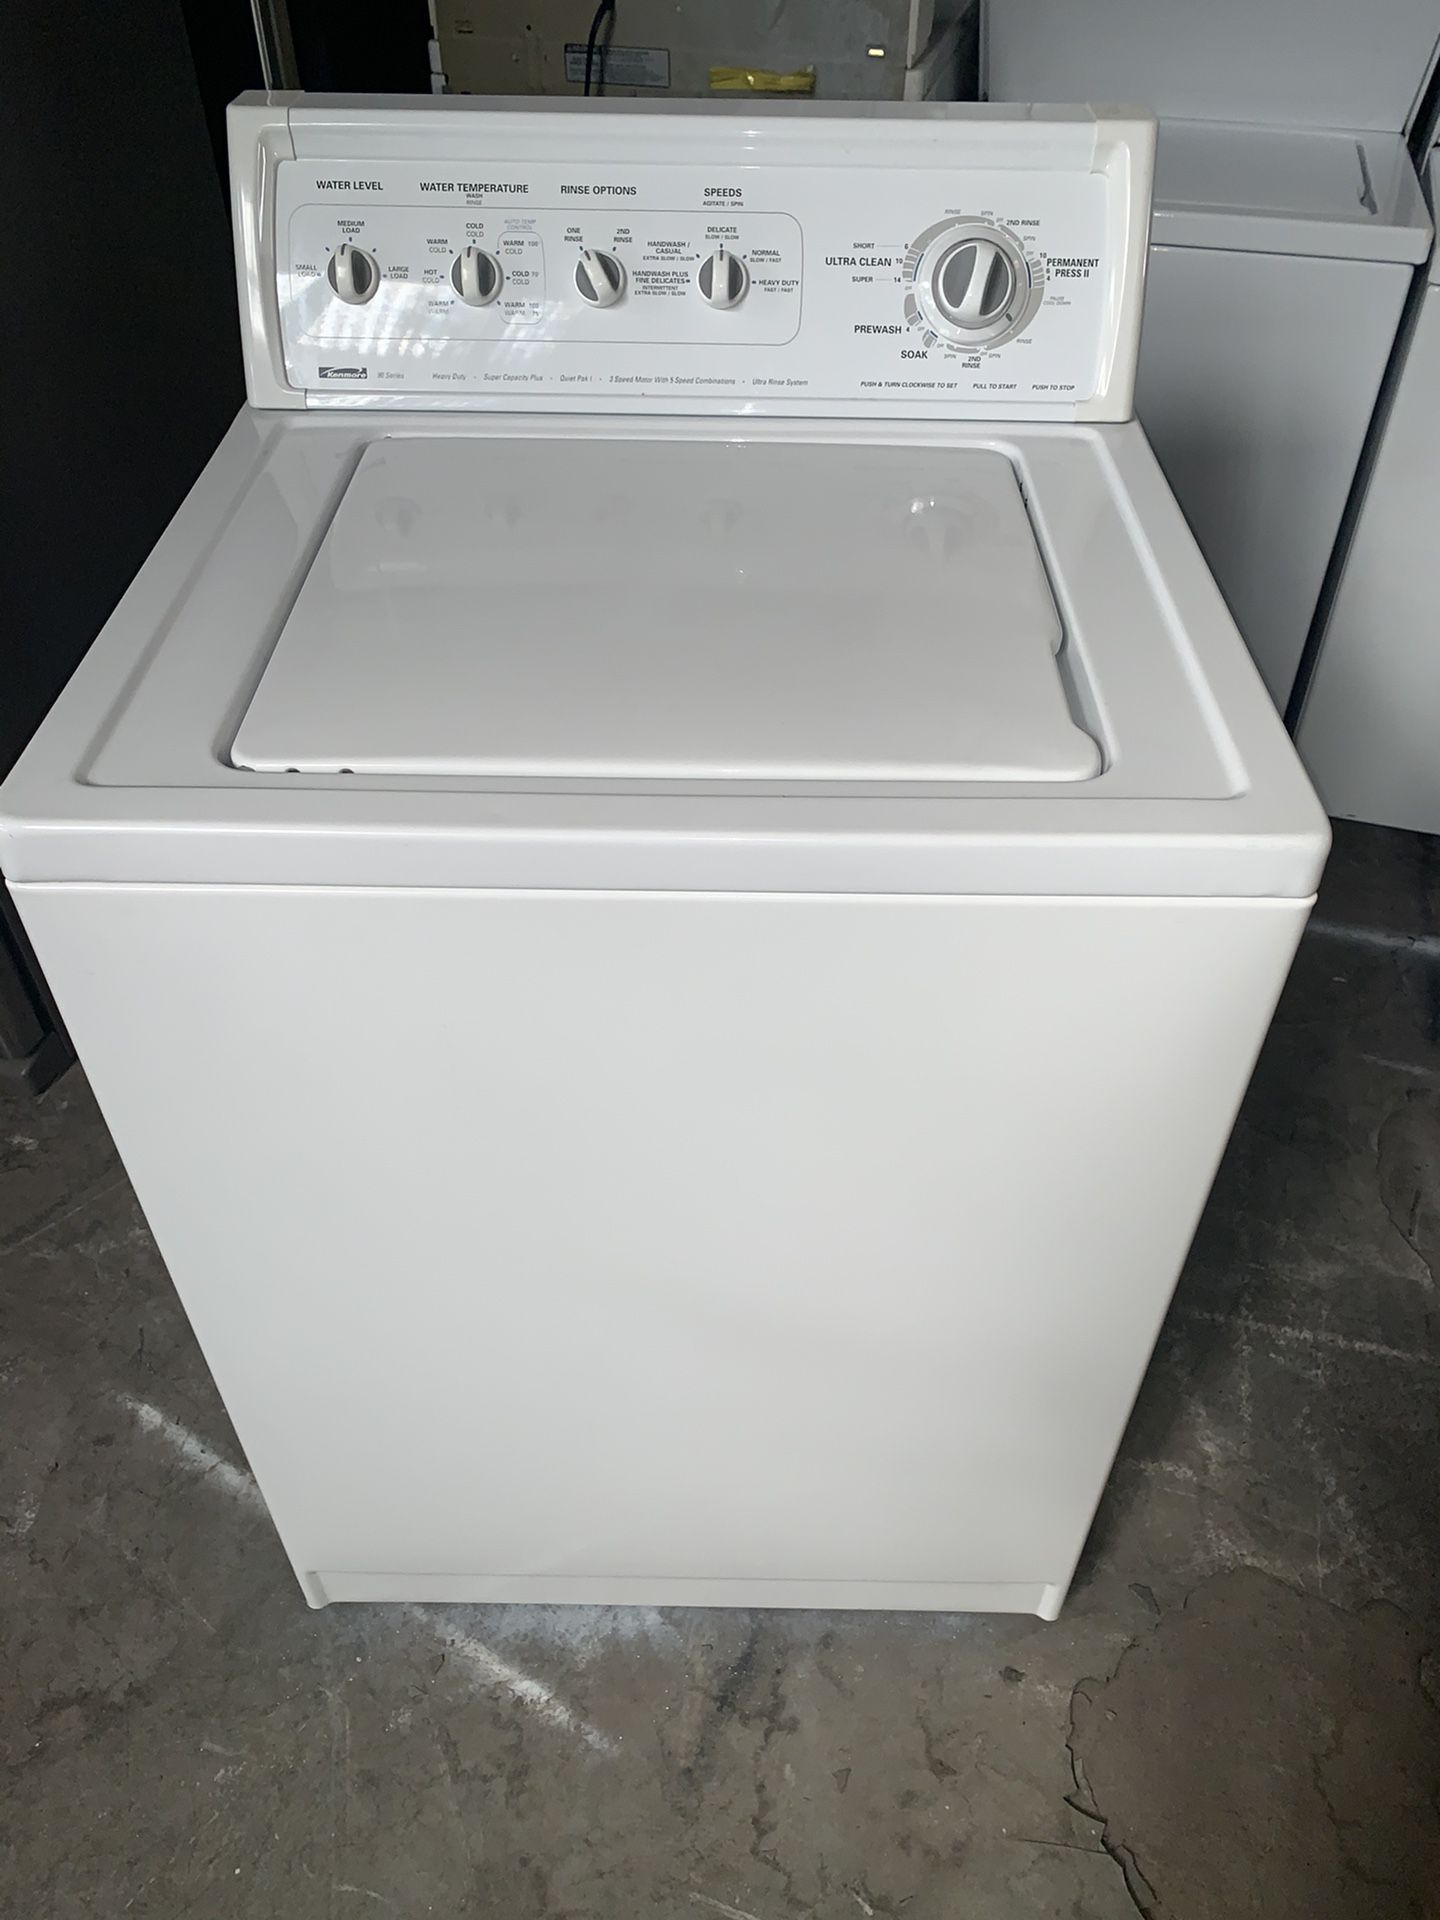 Washer kenmore good condition 90 days warranty lavadora kenmore buenas condiciones 90 dias de garantia